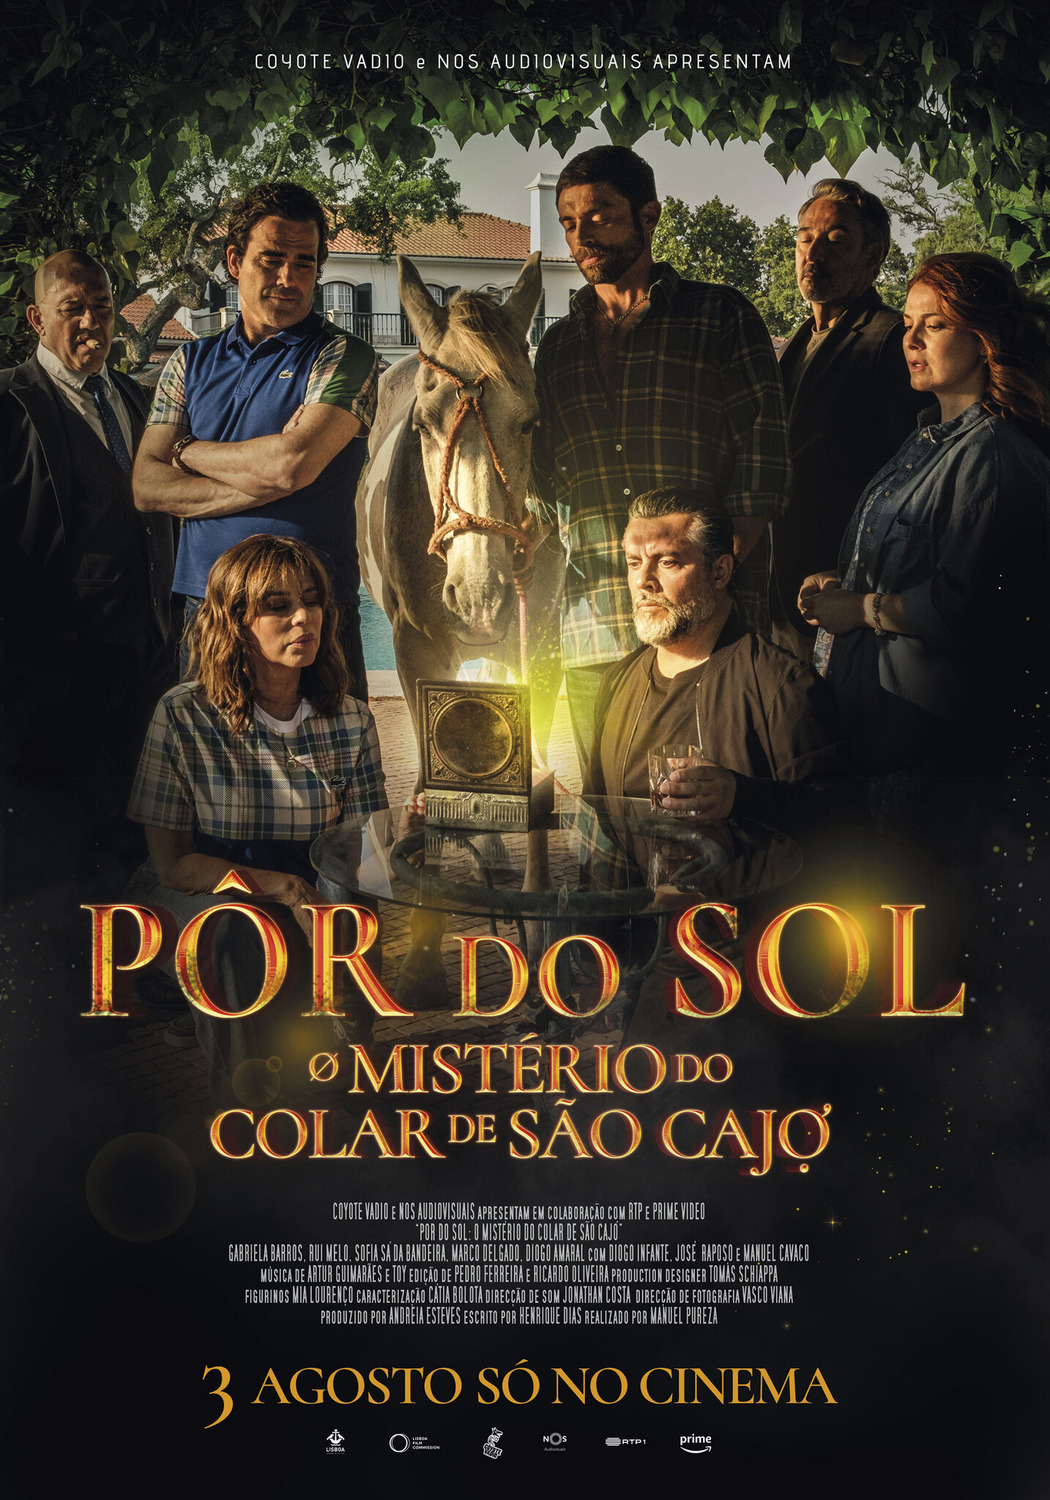 Extra Large Movie Poster Image for Pôr do Sol: O Mistério do Colar de São Cajó 